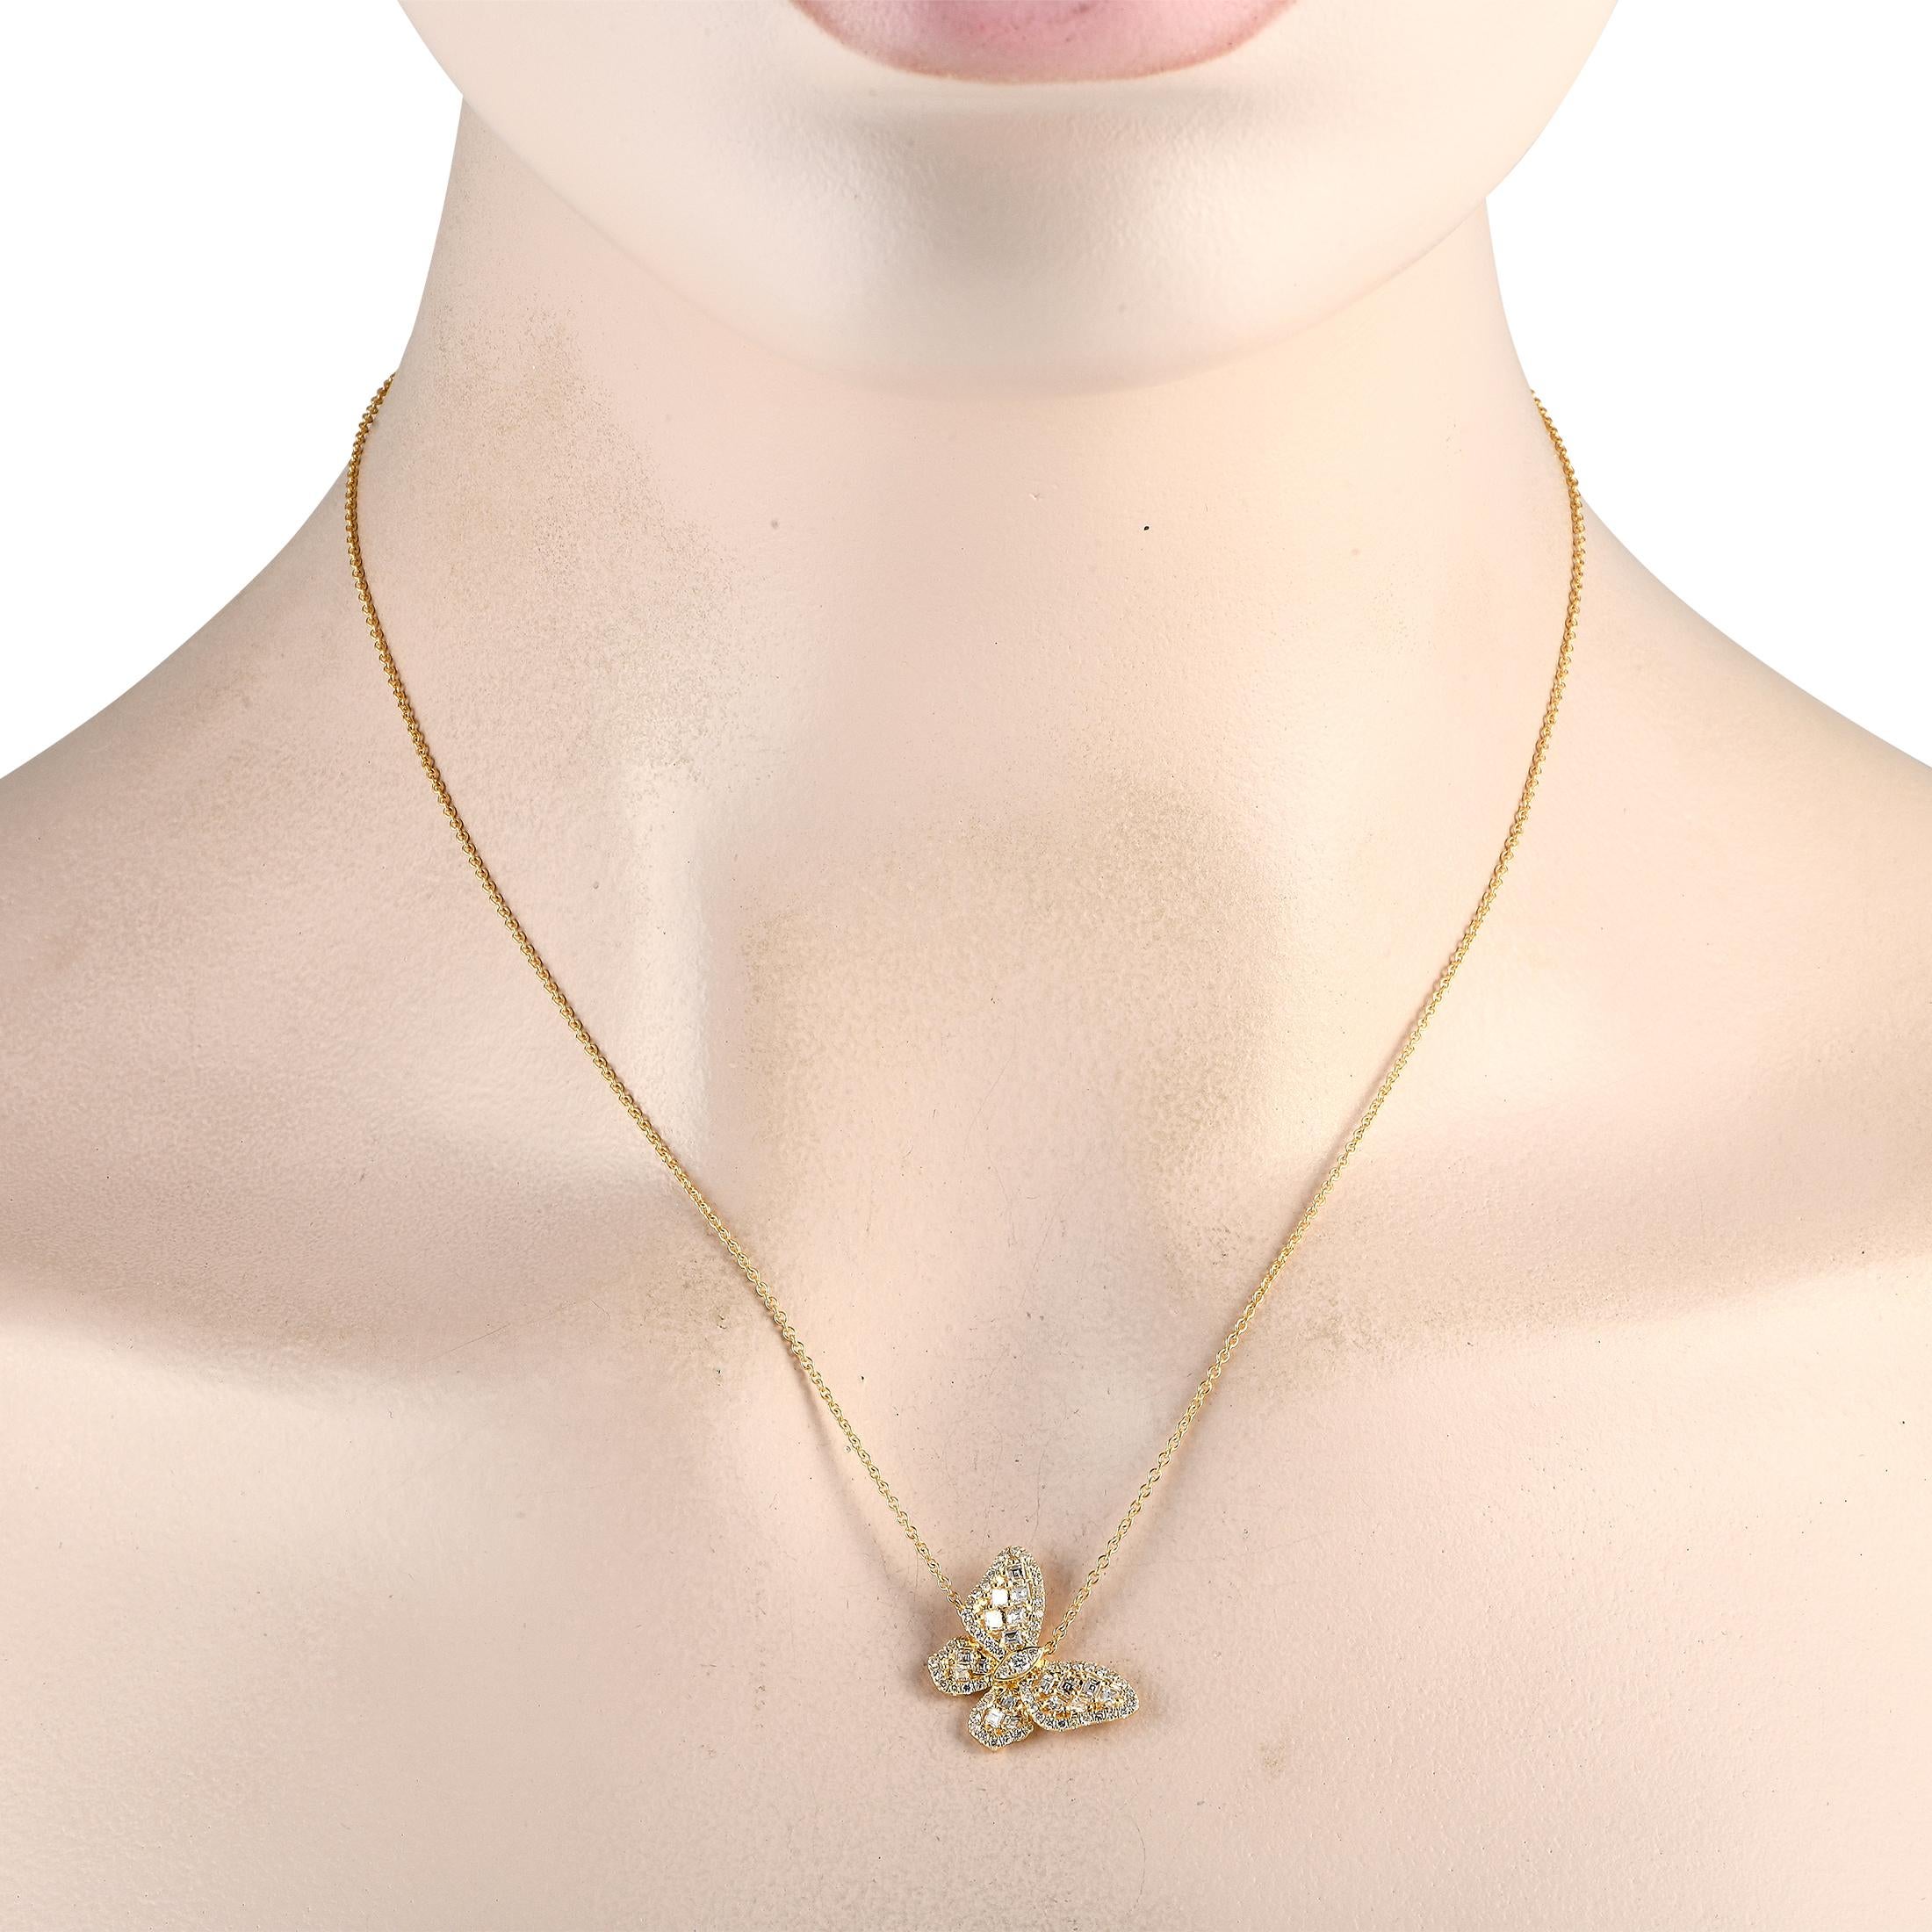 Diese charmante Halskette hat etwas Faszinierendes an sich. Aufgehängt an einer zarten 18er Kette, finden Sie einen atemberaubenden Schmetterlingsanhänger aus 18K Gelbgold, der 0,75 rund misst. Diamanten im Asscher-Schliff mit einem Gesamtgewicht